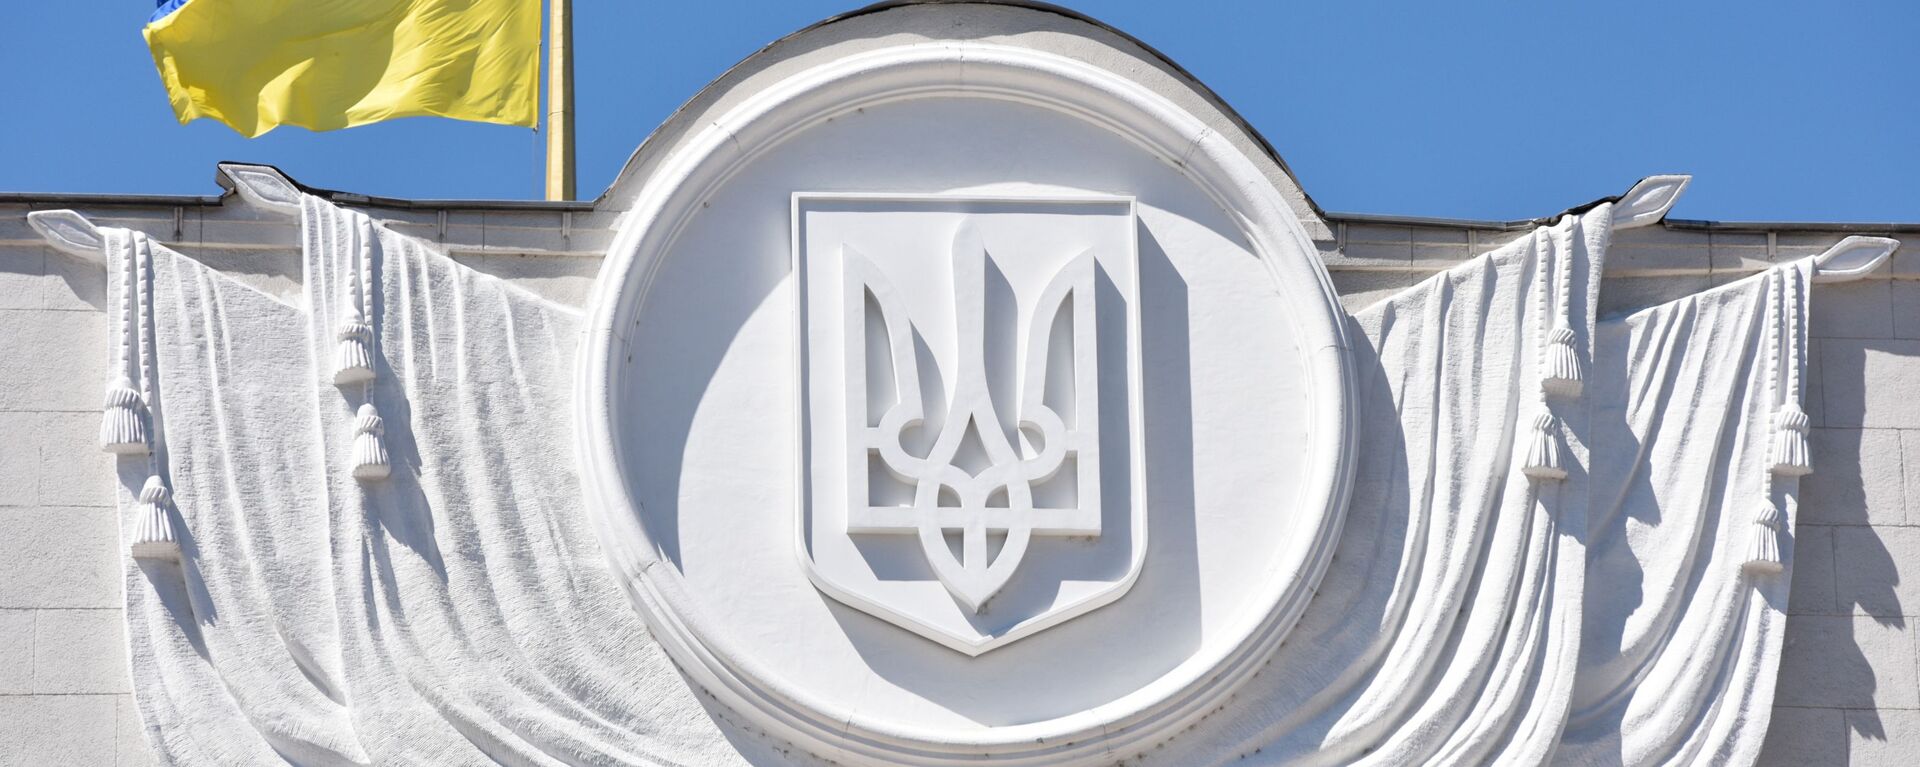 Флаг Украины на здании Верховной рады в Киеве - Sputnik Latvija, 1920, 19.08.2021